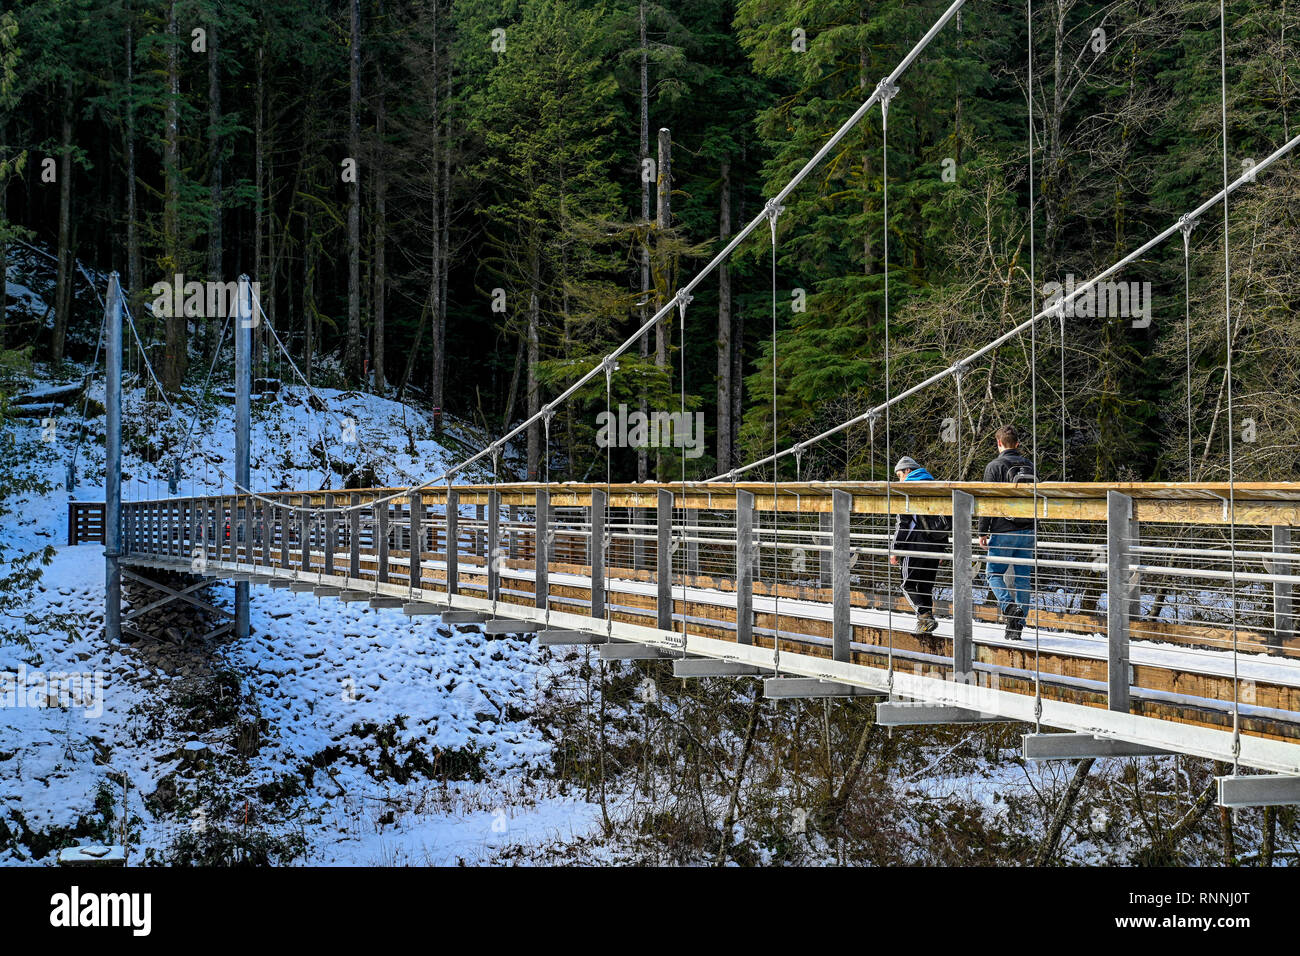 Le pont suspendu de la rivière Seymour, Réserve de conservation Lower Seymour, North Vancouver, Colombie-Britannique, Canada Banque D'Images